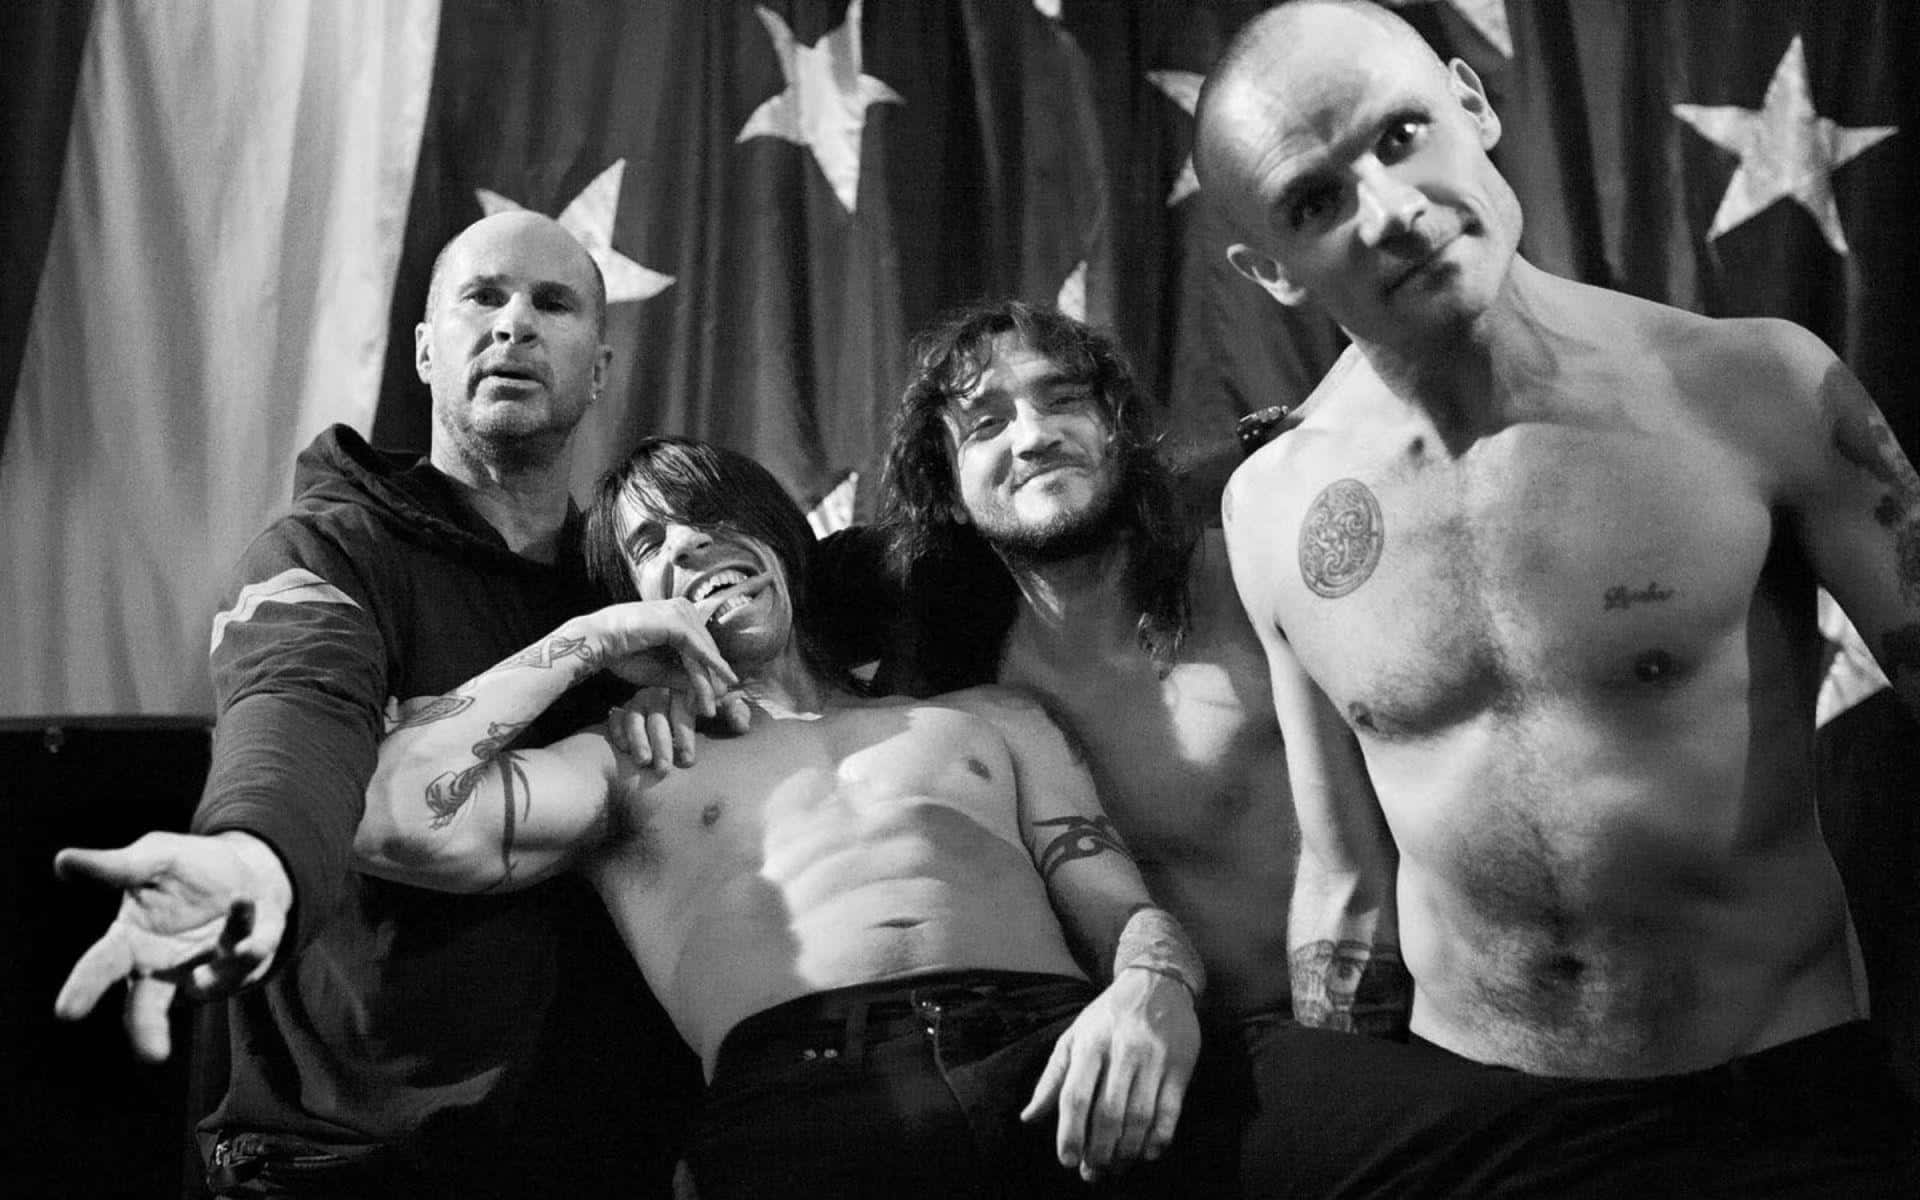 En Live præstation af Red Hot Chili Peppers Wallpaper